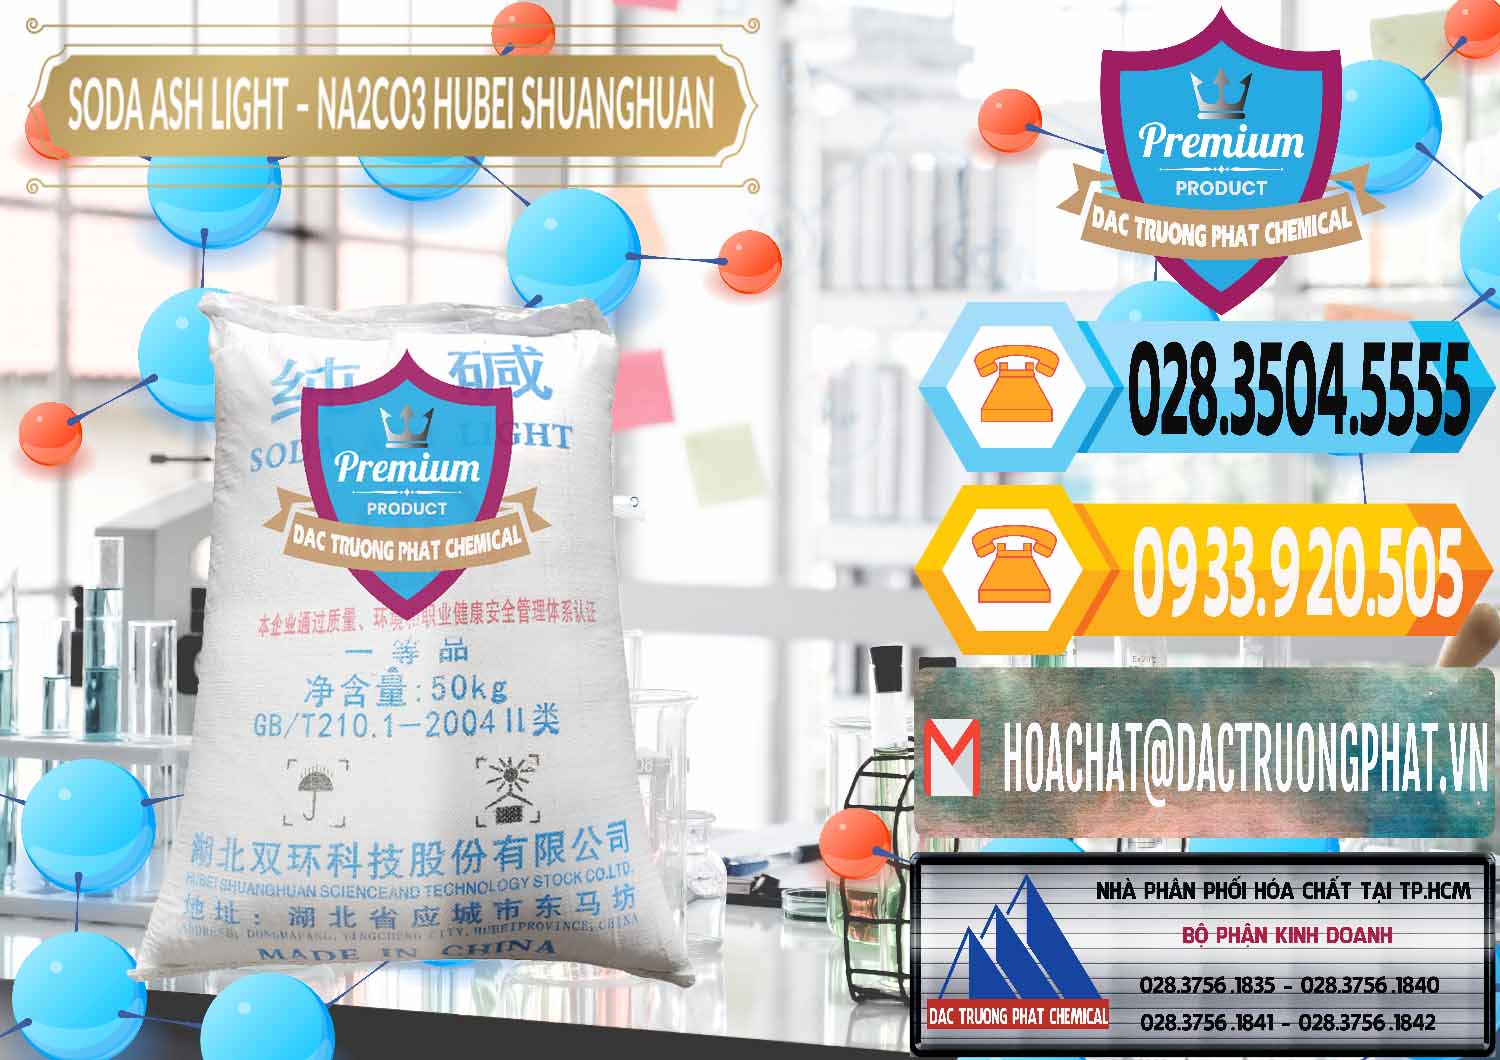 Cty bán - phân phối Soda Ash Light - NA2CO3 2 Vòng Tròn Hubei Shuanghuan Trung Quốc China - 0130 - Nơi chuyên bán _ cung cấp hóa chất tại TP.HCM - hoachattayrua.net